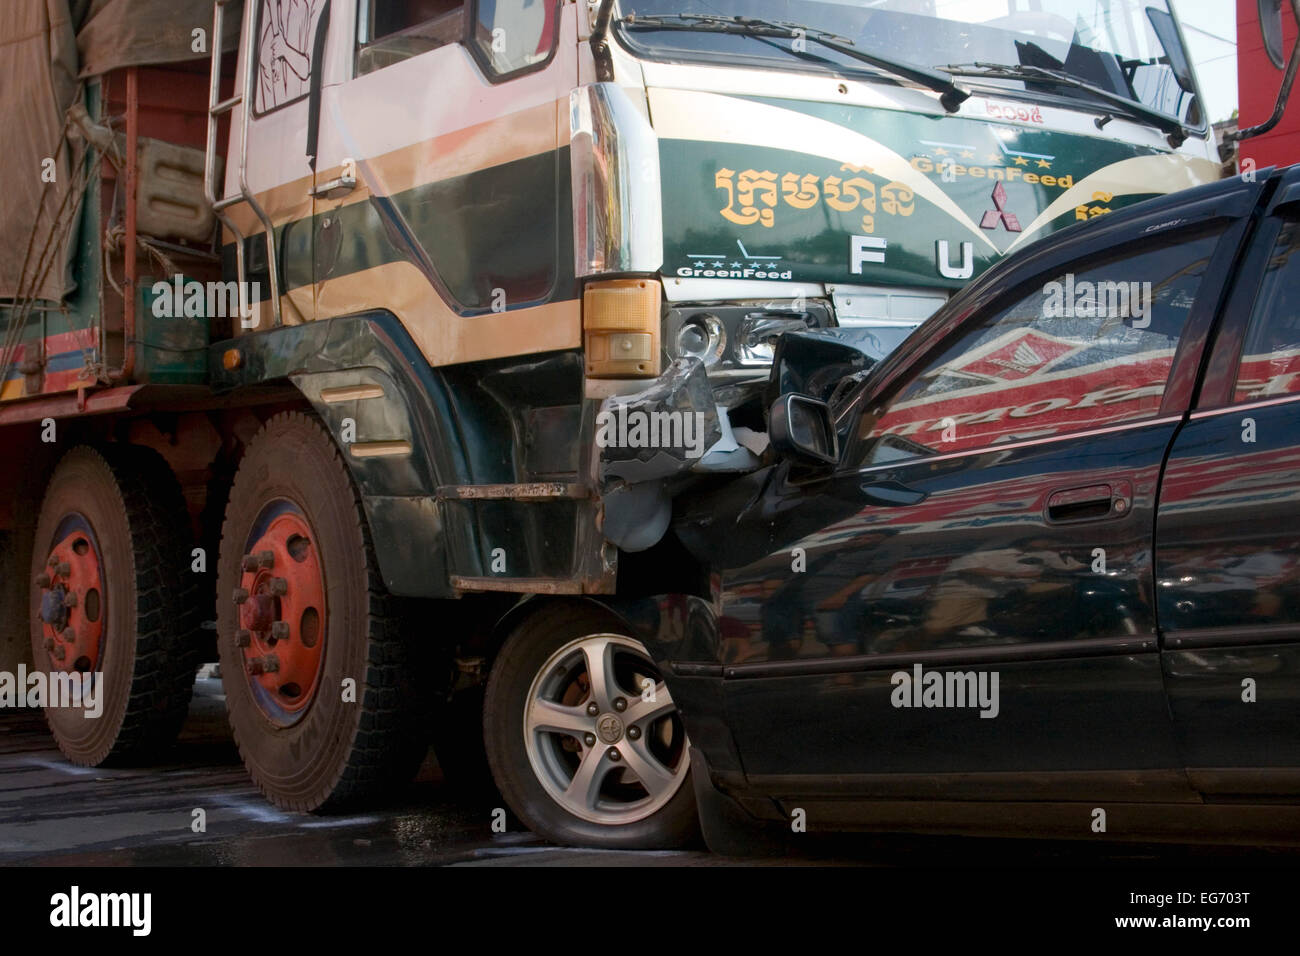 La suite d'une collision frontale entre une voiture et un camion sur la Route Nationale 7 à Kampong Cham, au Cambodge. Banque D'Images